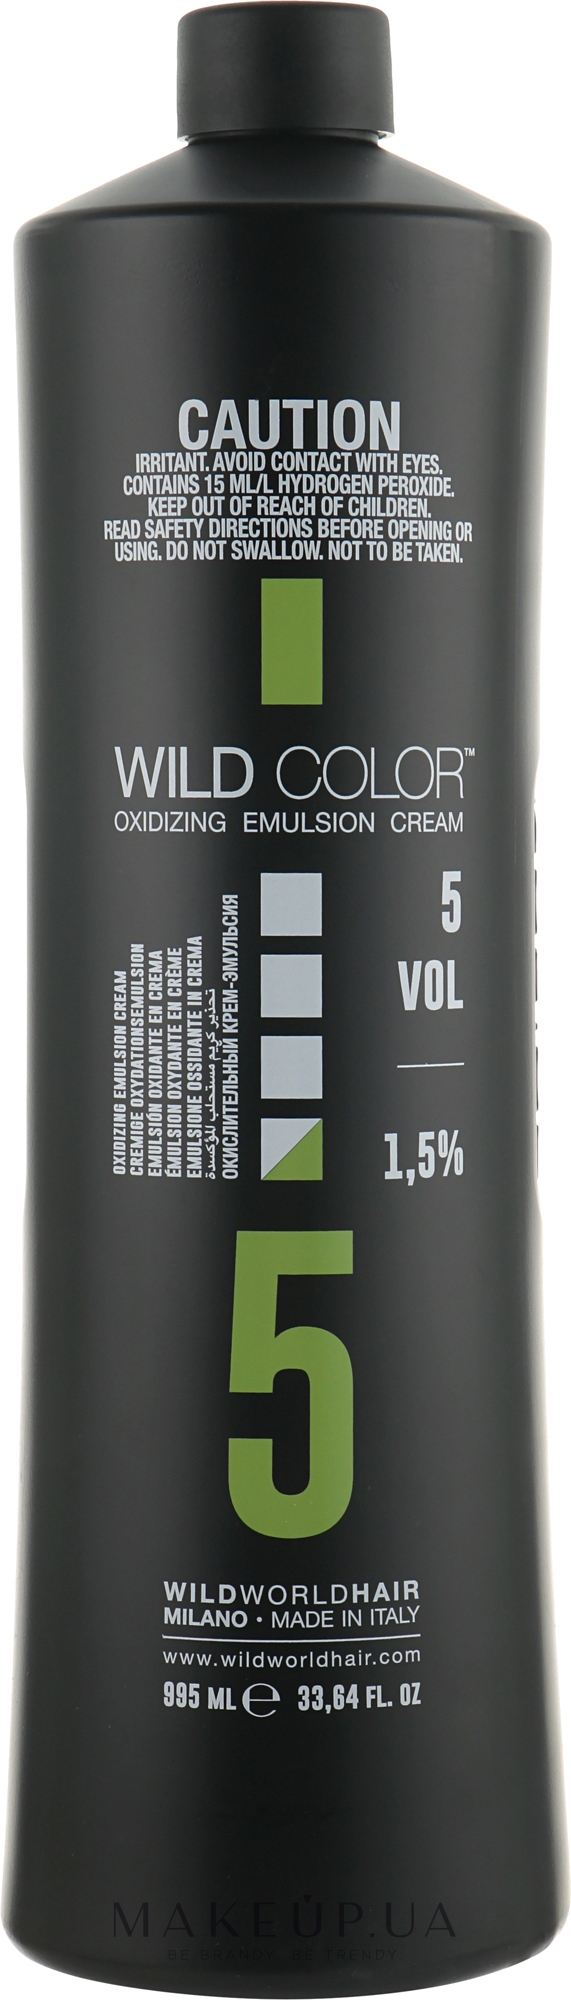 Окислительная эмульсия 1.5% - Wild Color Oxidizing Emulsion Cream VOL5 — фото 995ml